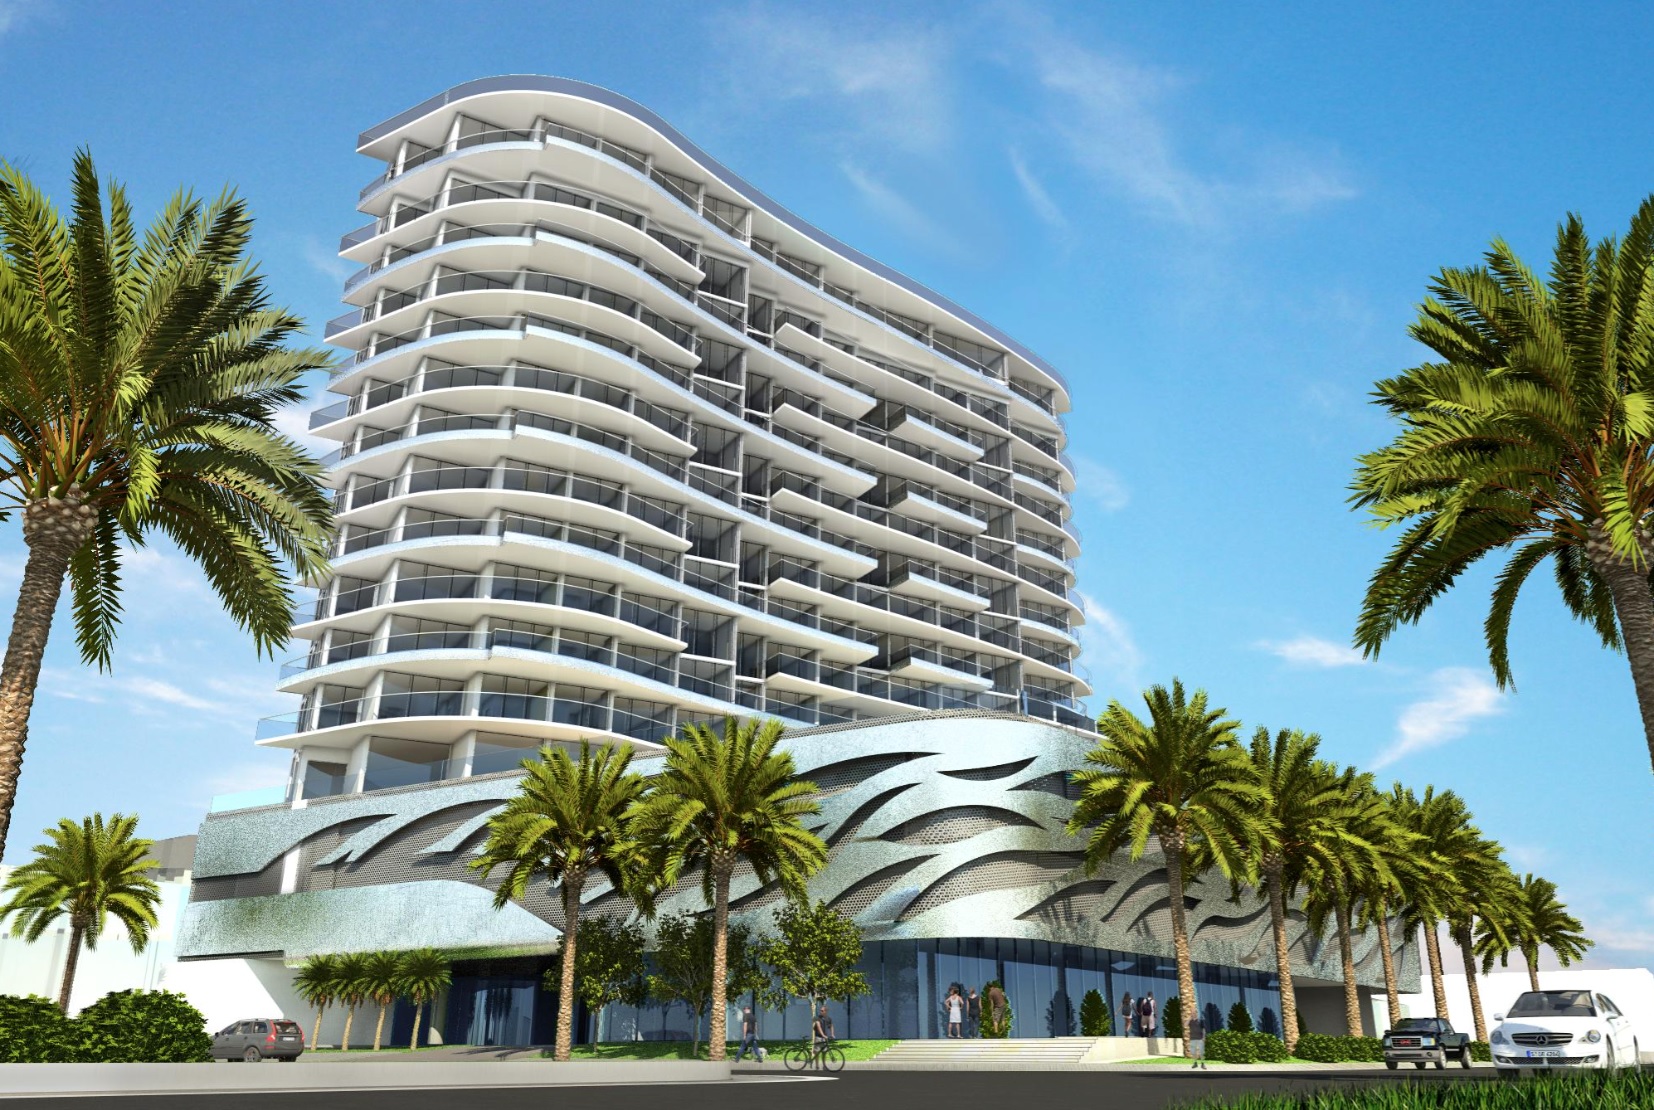 Artist rendering of redesigned Verzasca condominium proposed at 17550 Collins Avenue in Sunny Isles Beach.